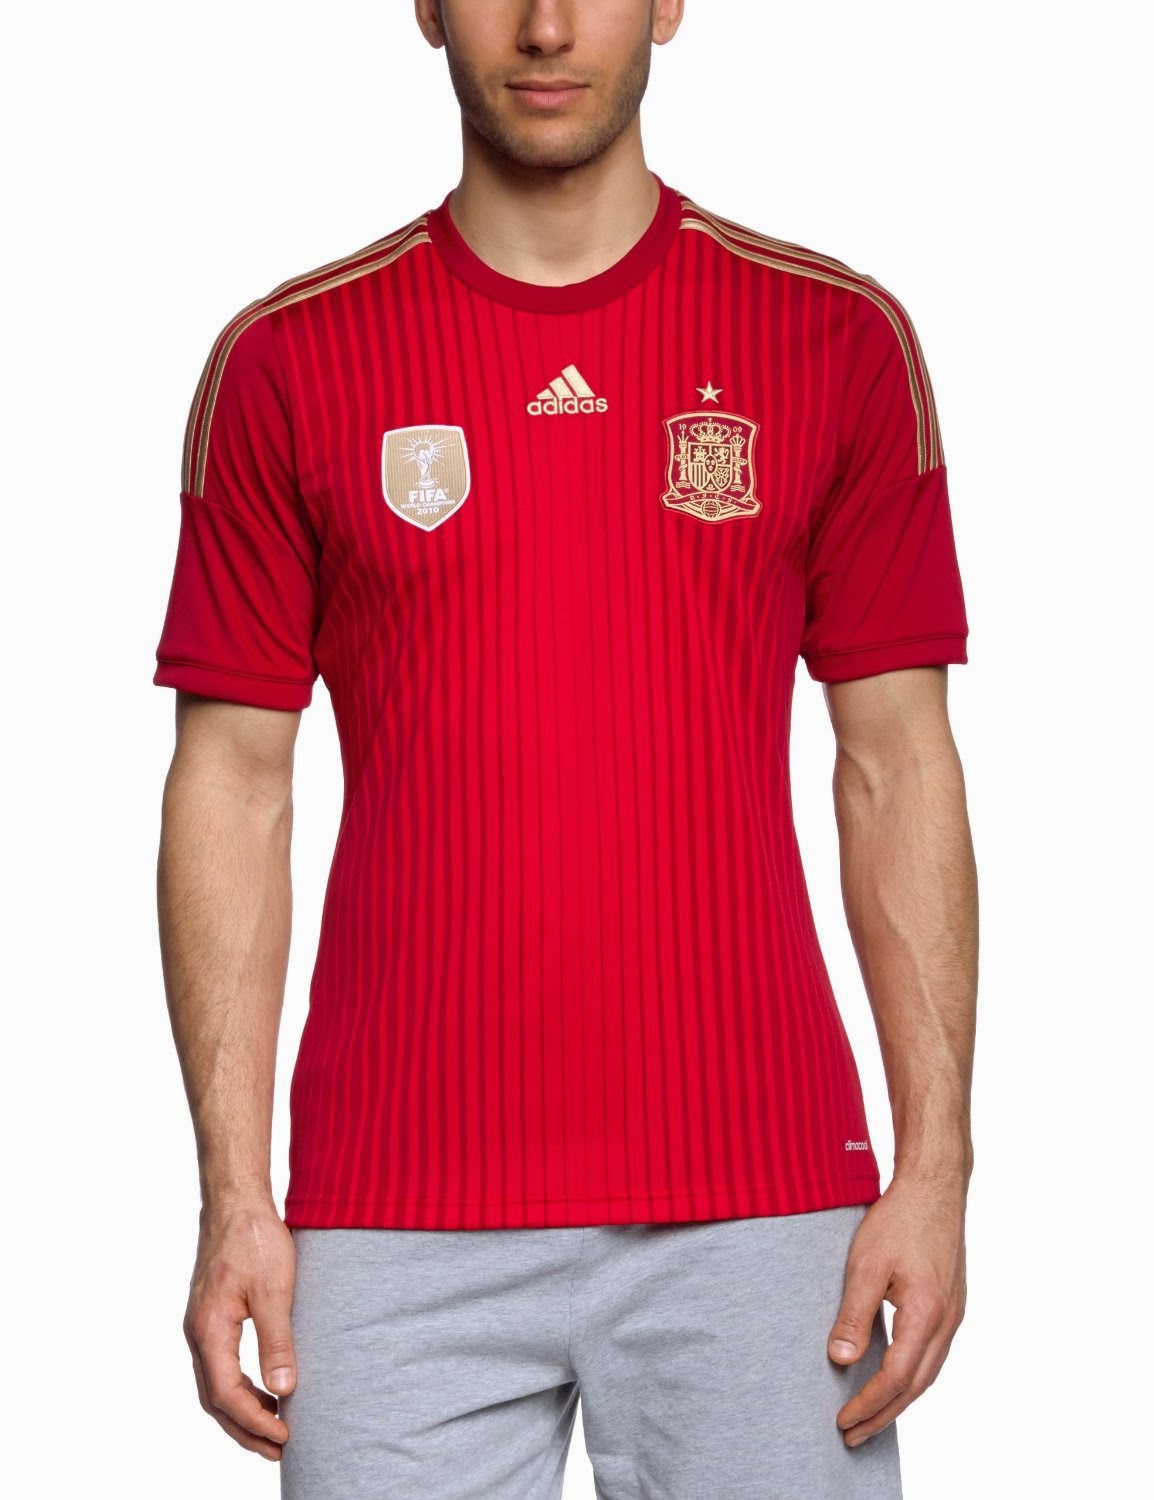 Cadera Generalmente distorsionar Camiseta de la Selección Española 2014 | Blog del Real Madrid